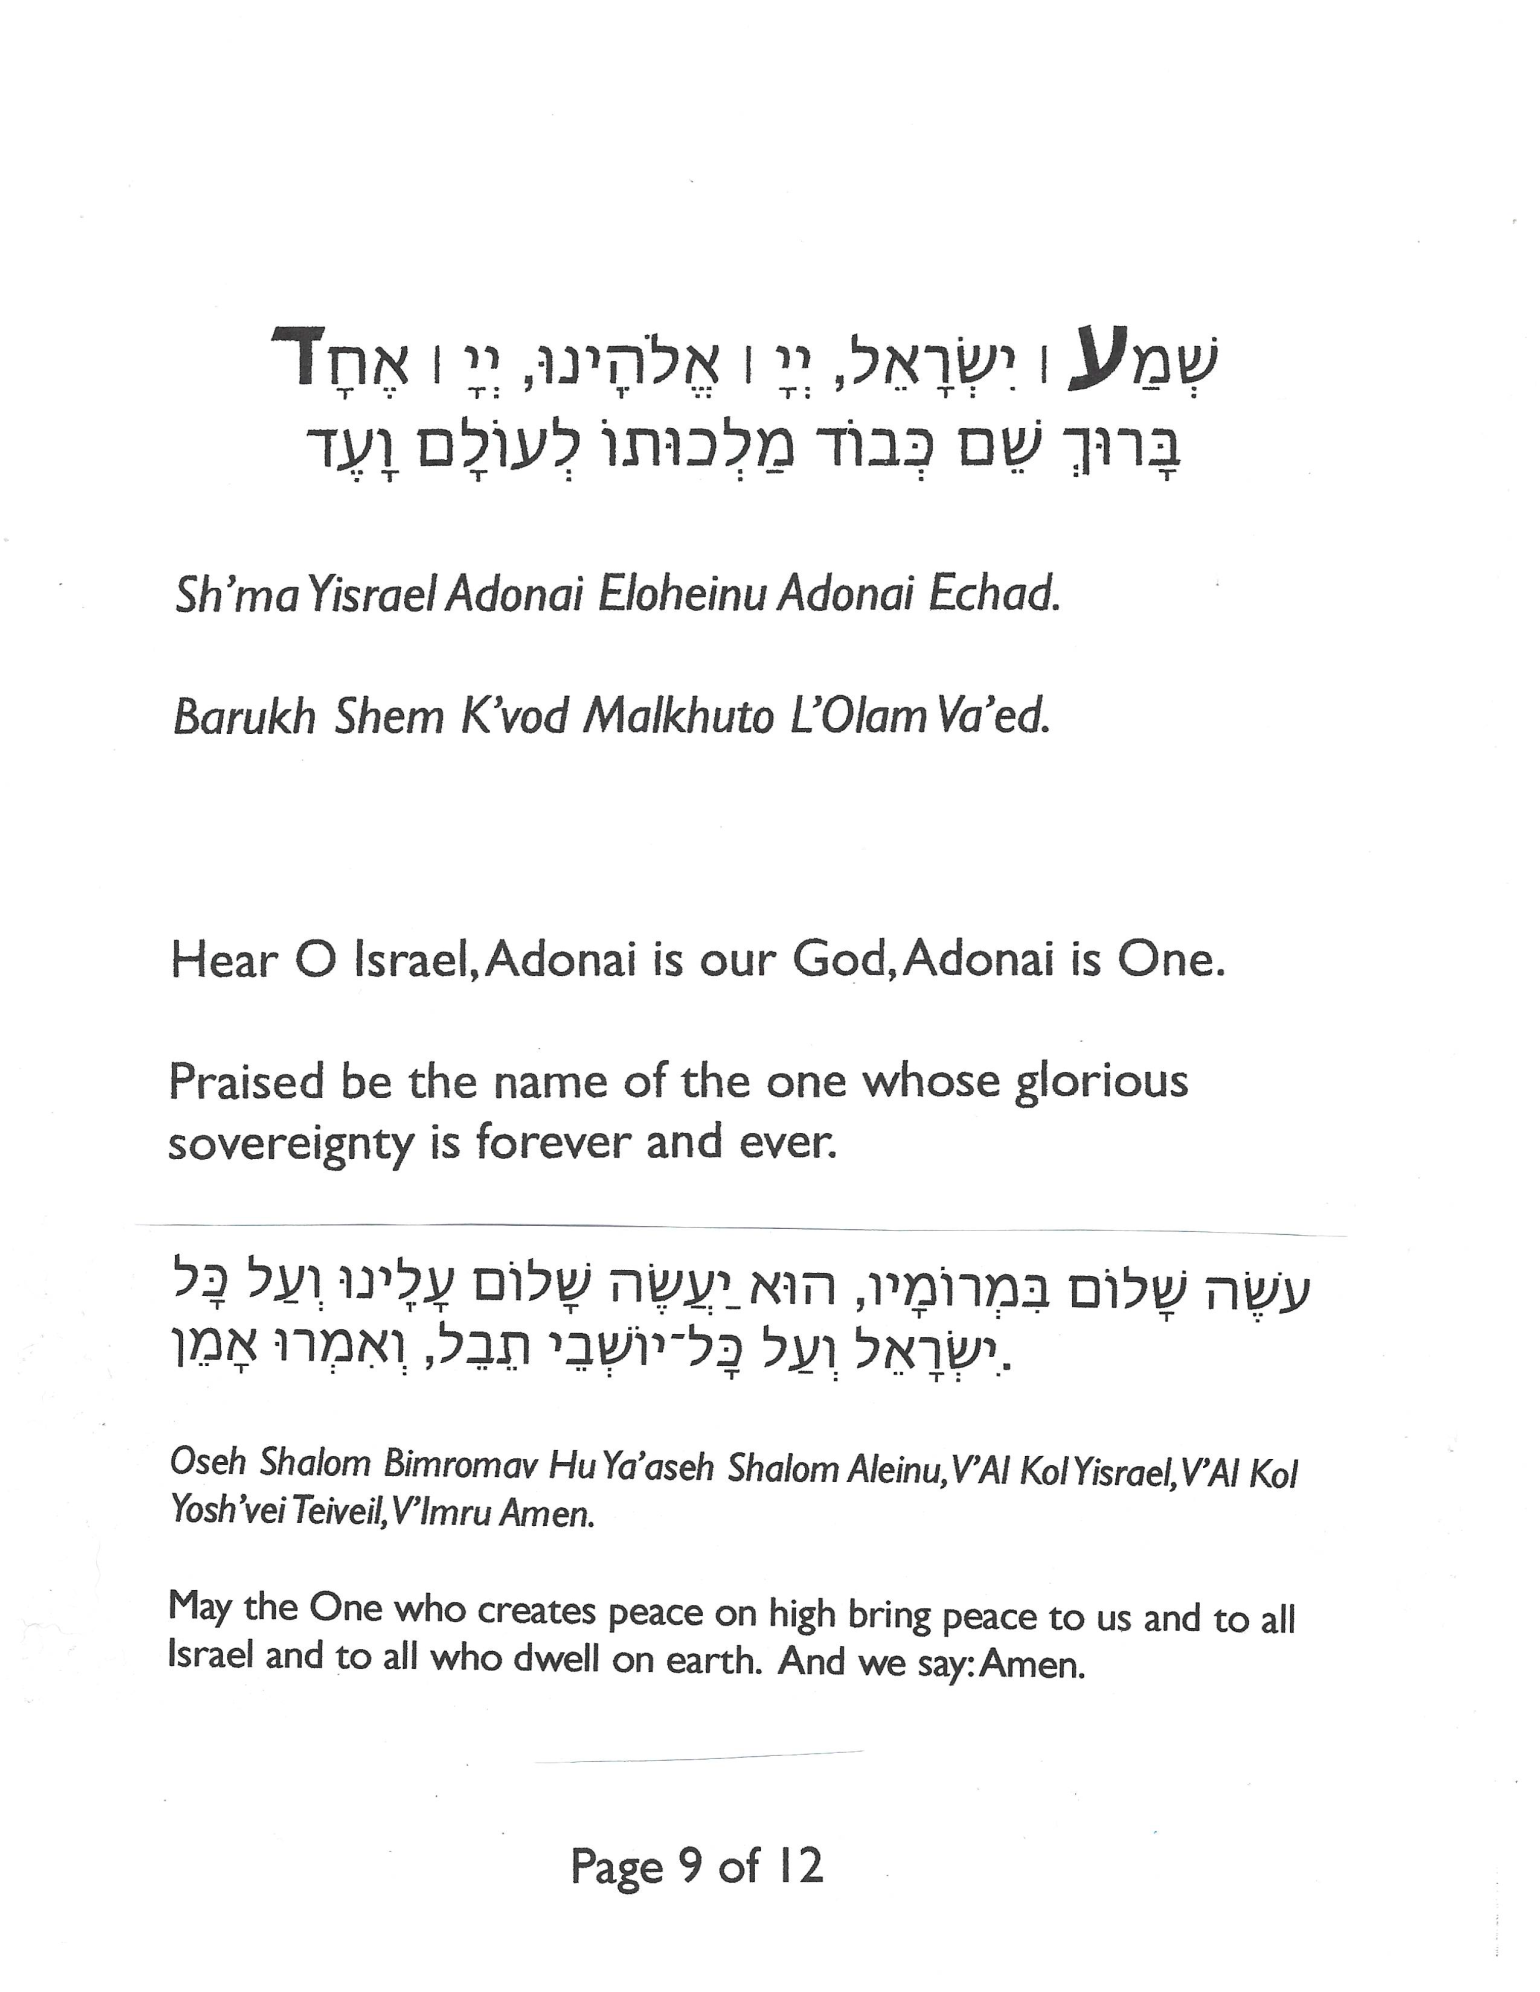 PJ Shabbat Siddur rev 8-15-19_Page_09